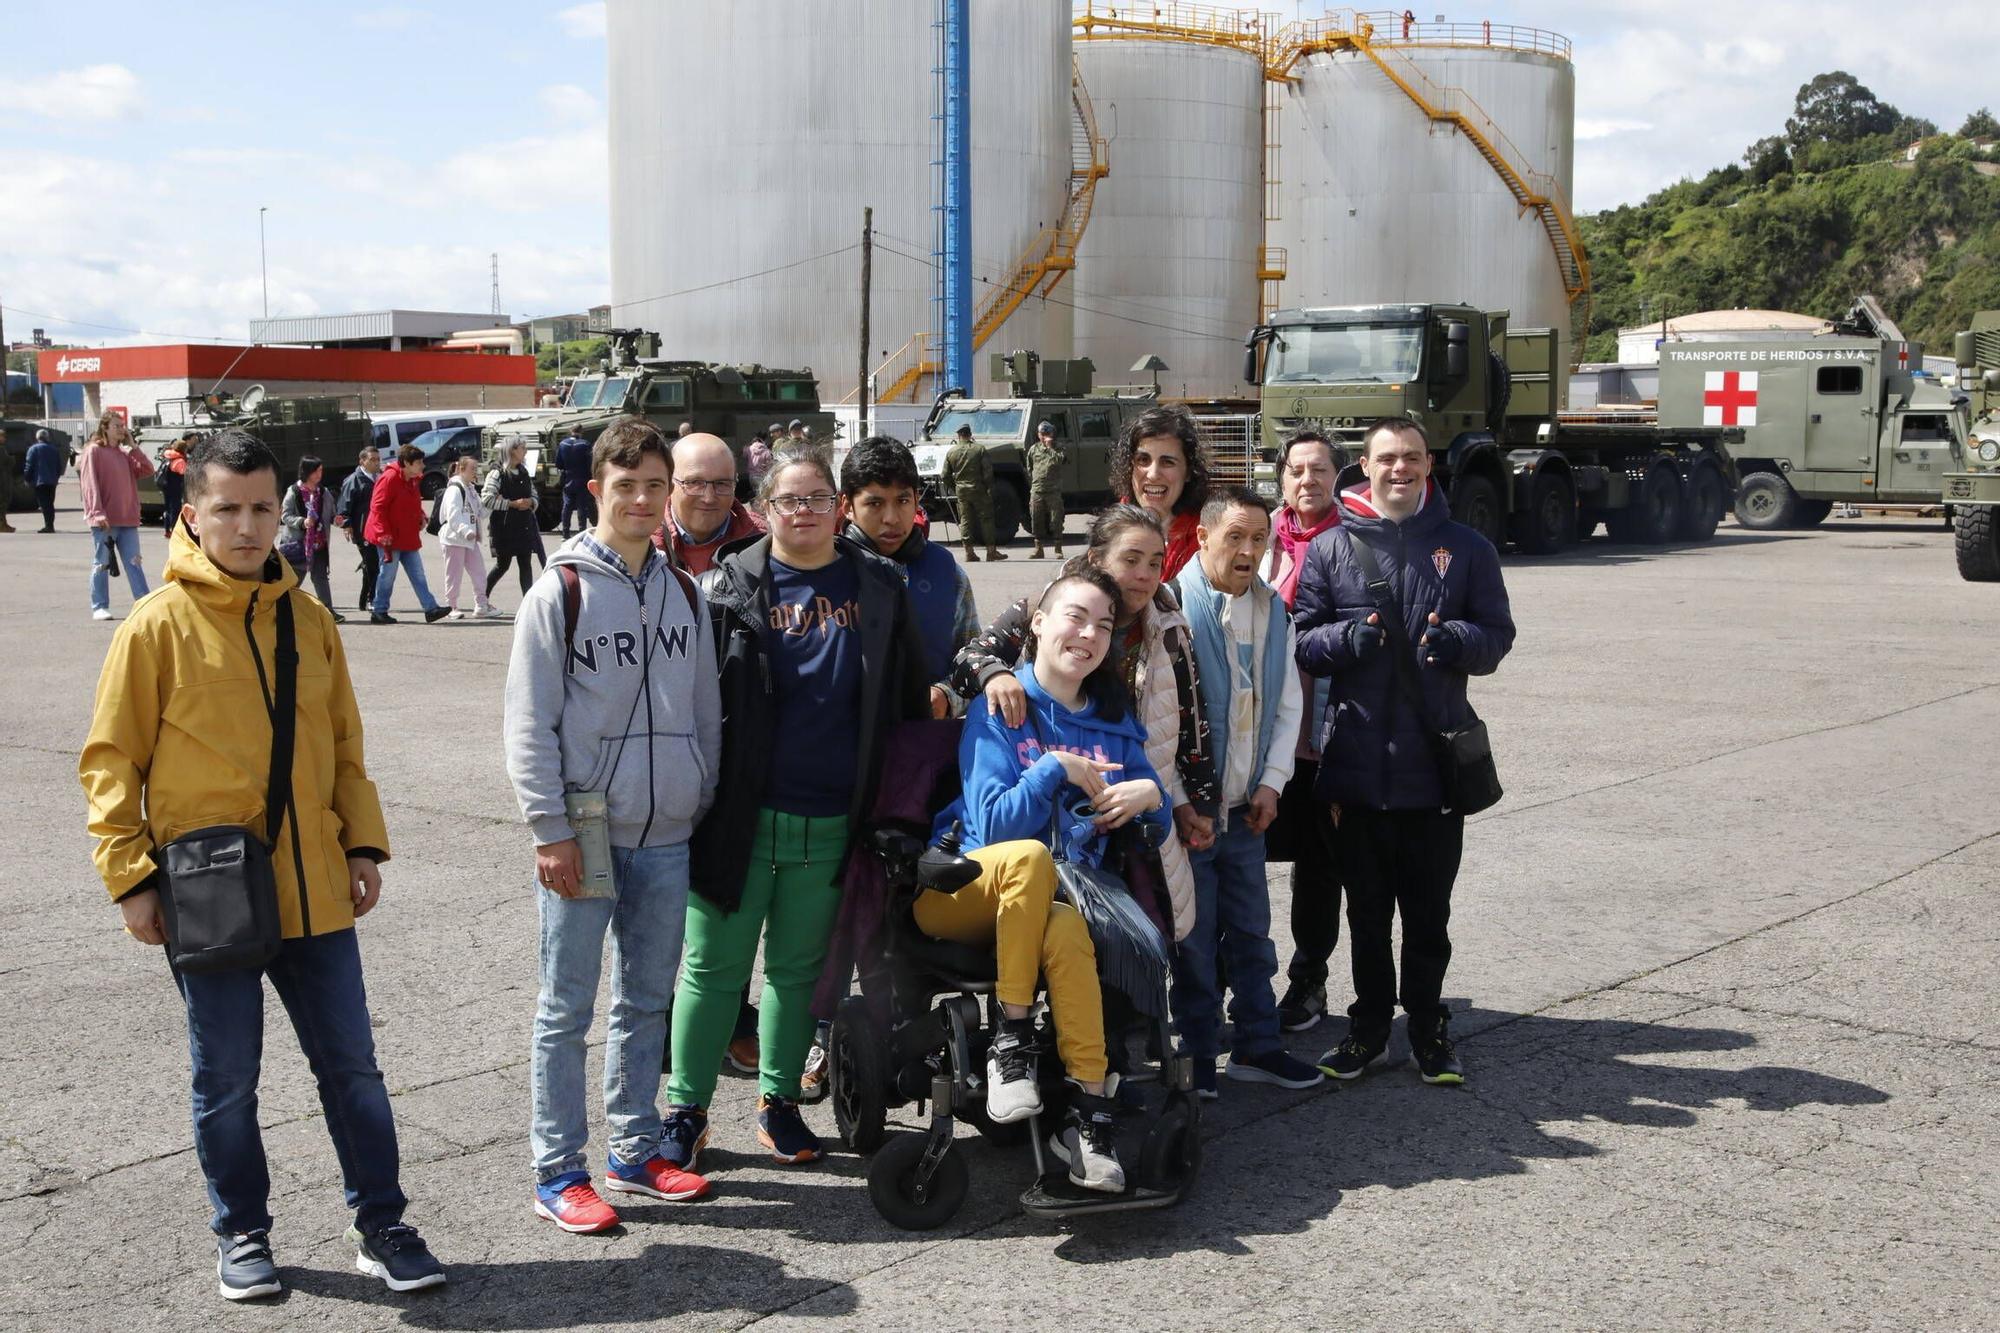 Así fue la visita institucional a los barcos de guerra que están en Gijón por el Día de las Fuerzas Armadas